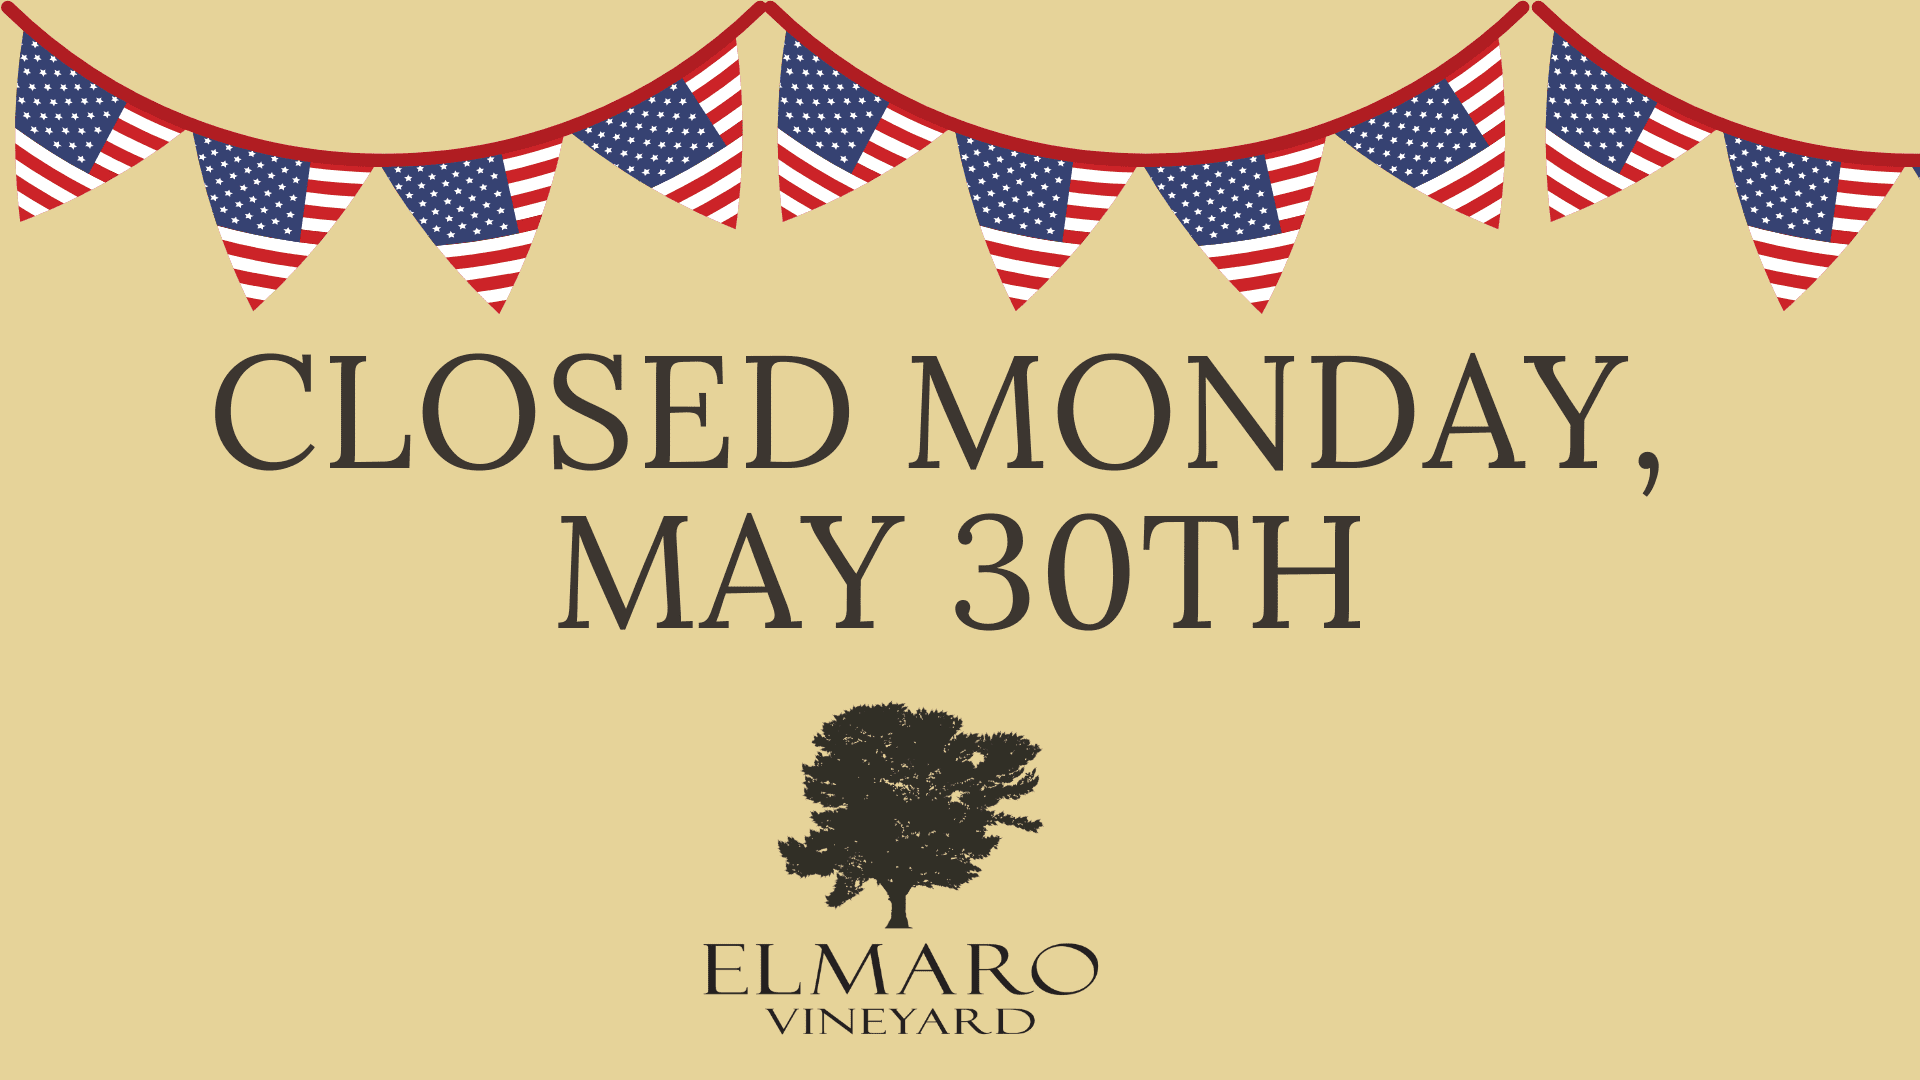 Closed monday, may 30th.